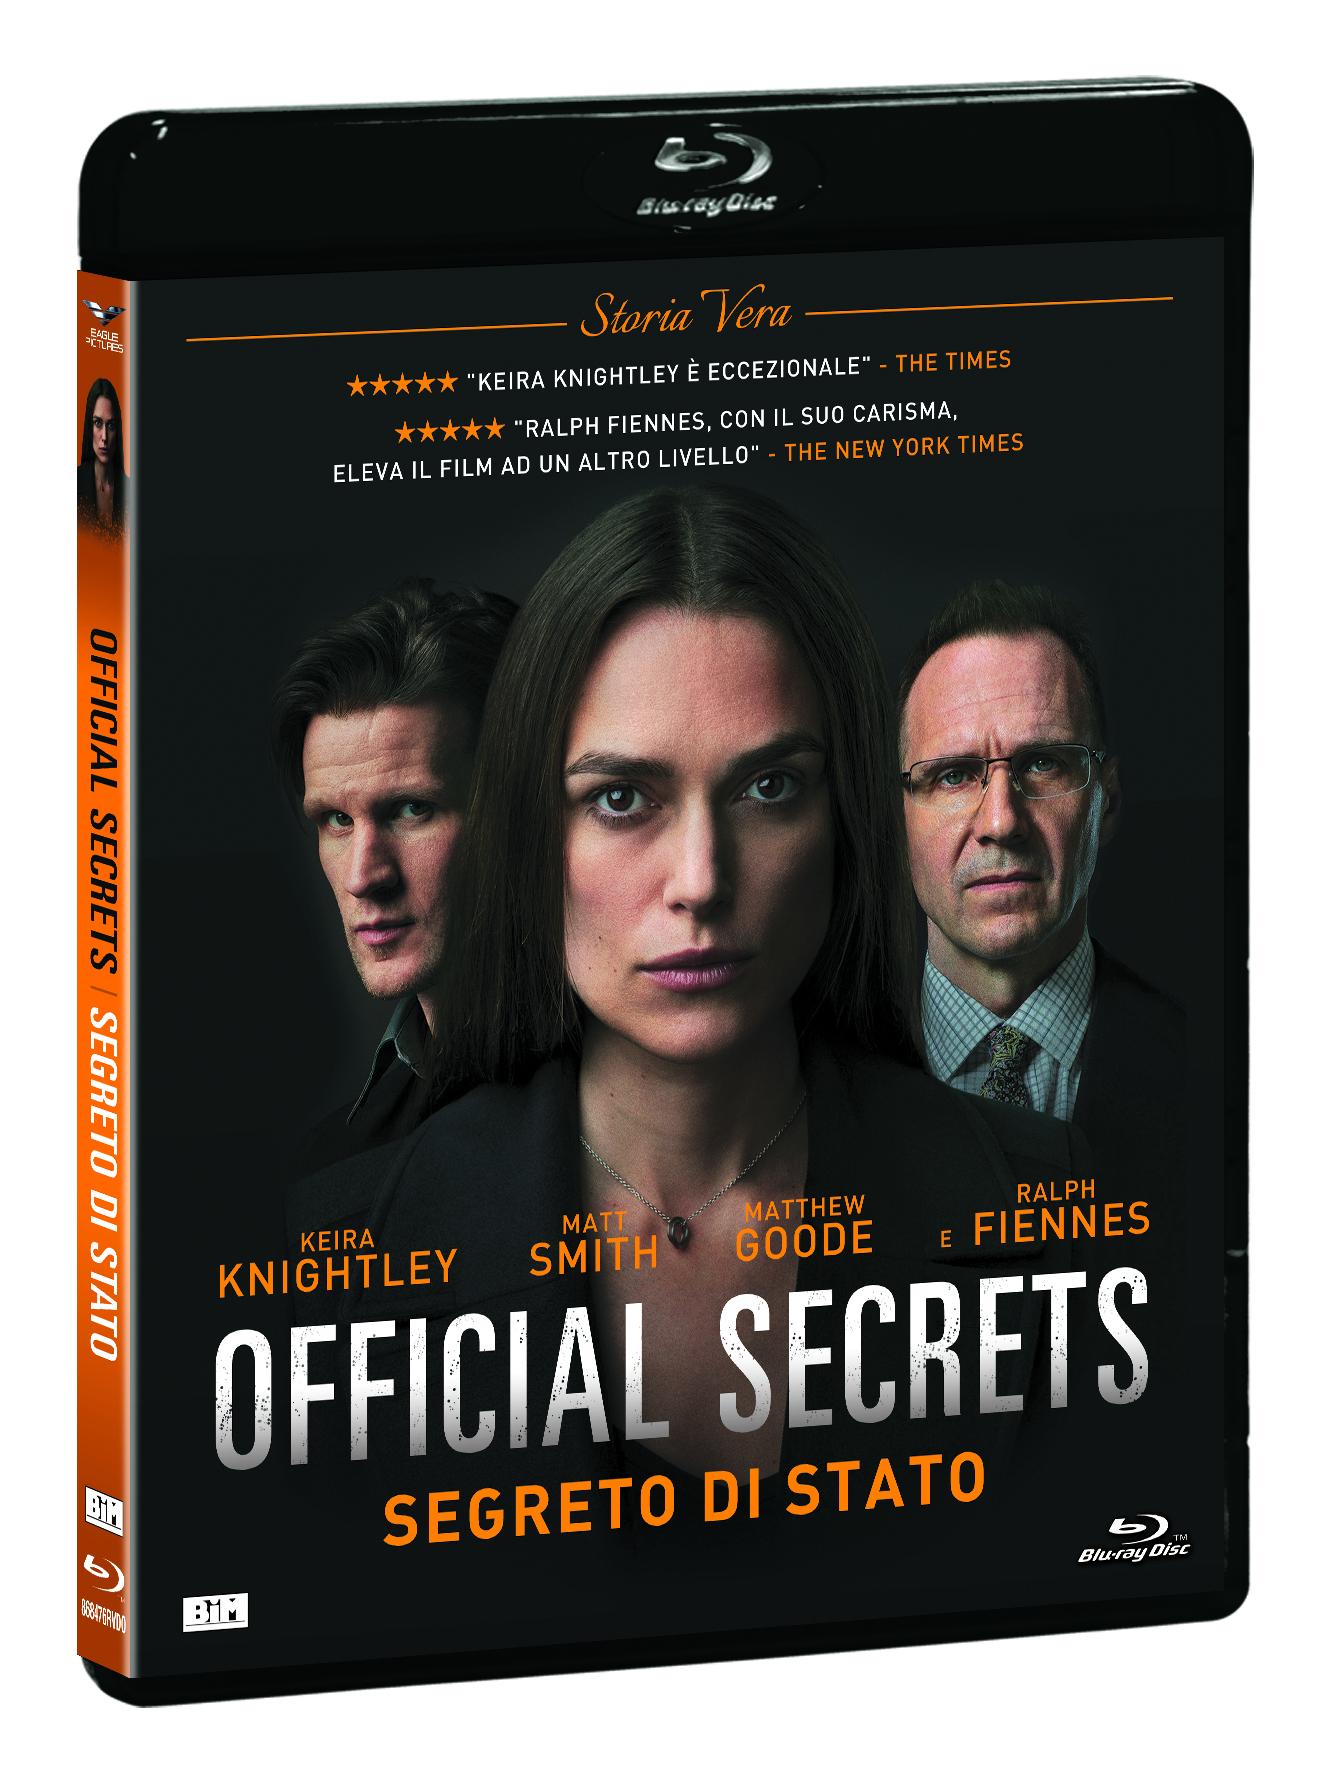 OFFICIAL SECRETS - SEGRETO DI STATO